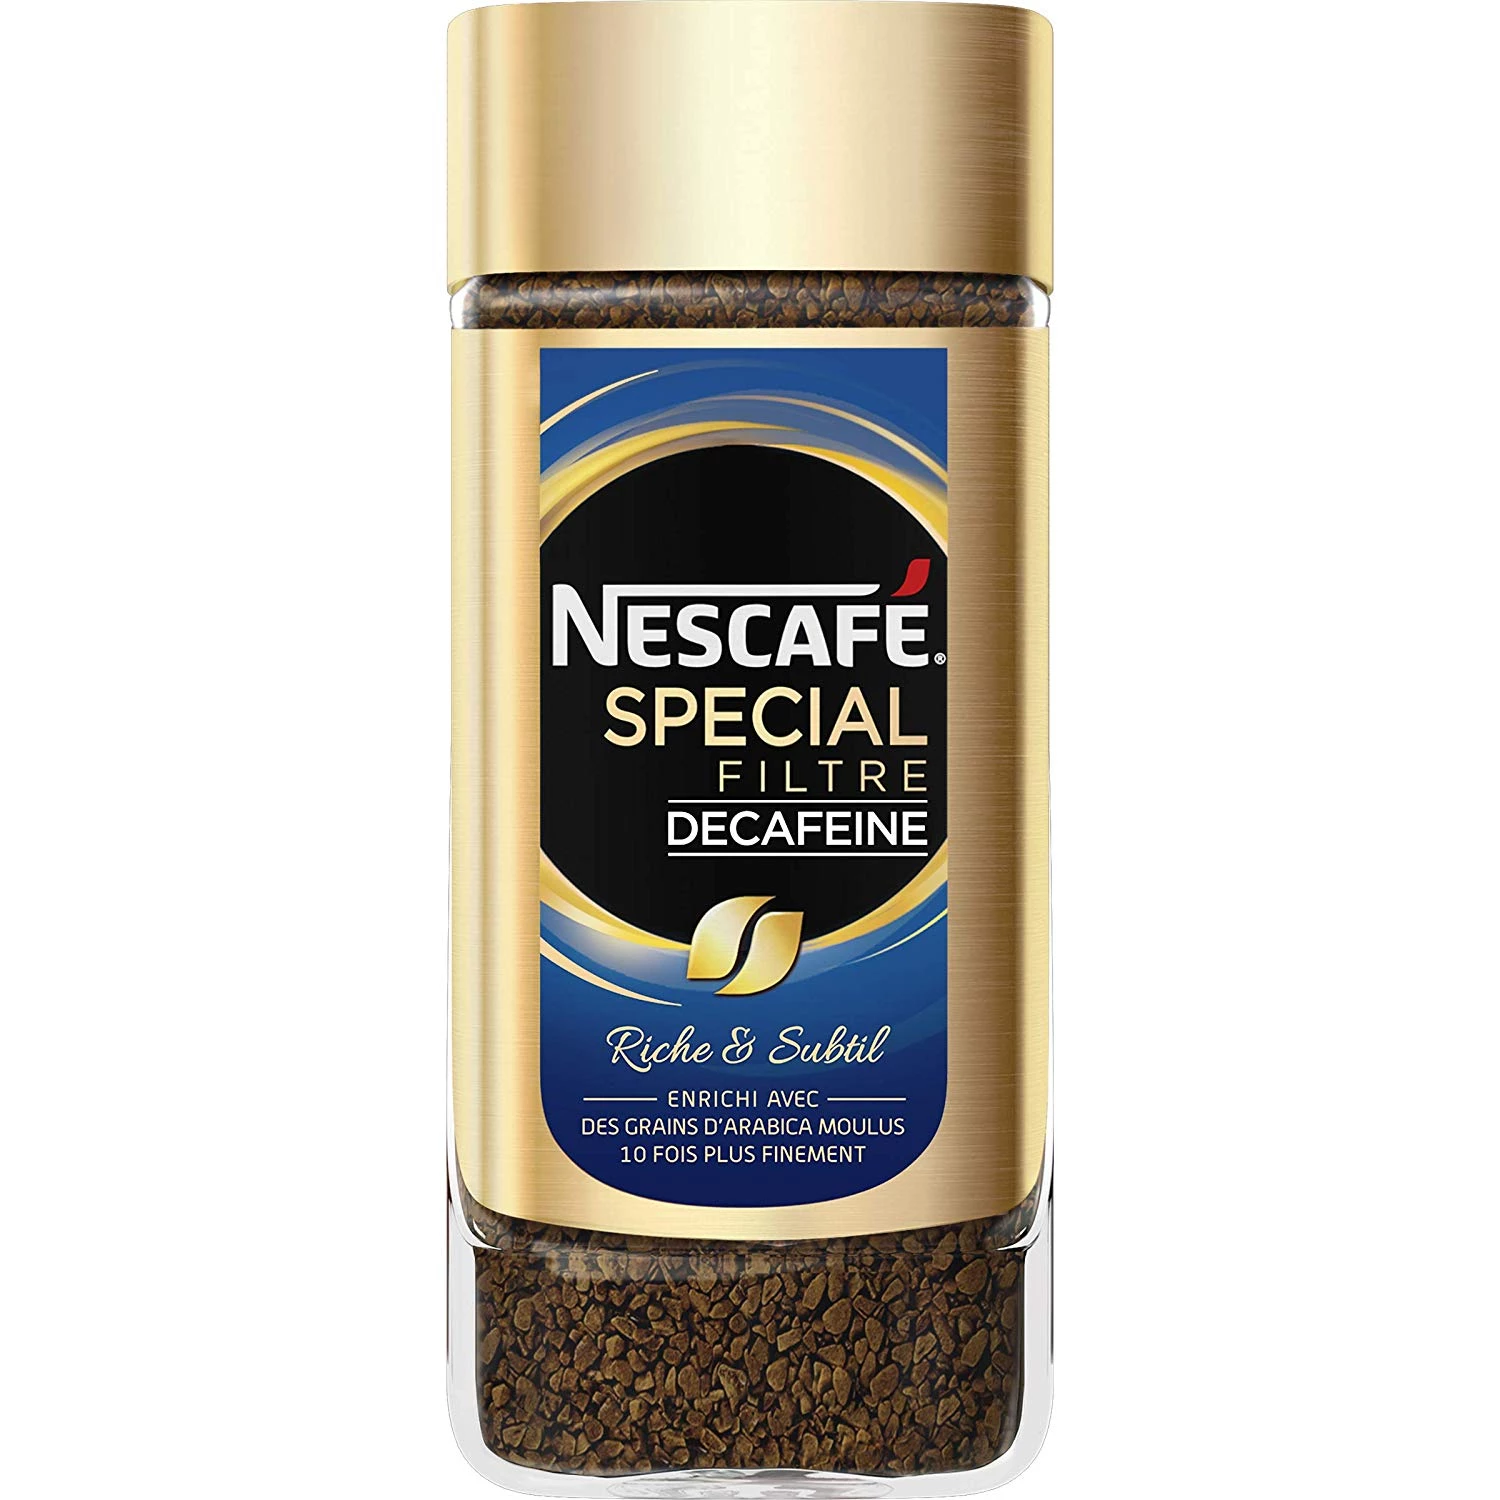 特製カフェインレスフィルターコーヒー 100g - NESCAFÉ